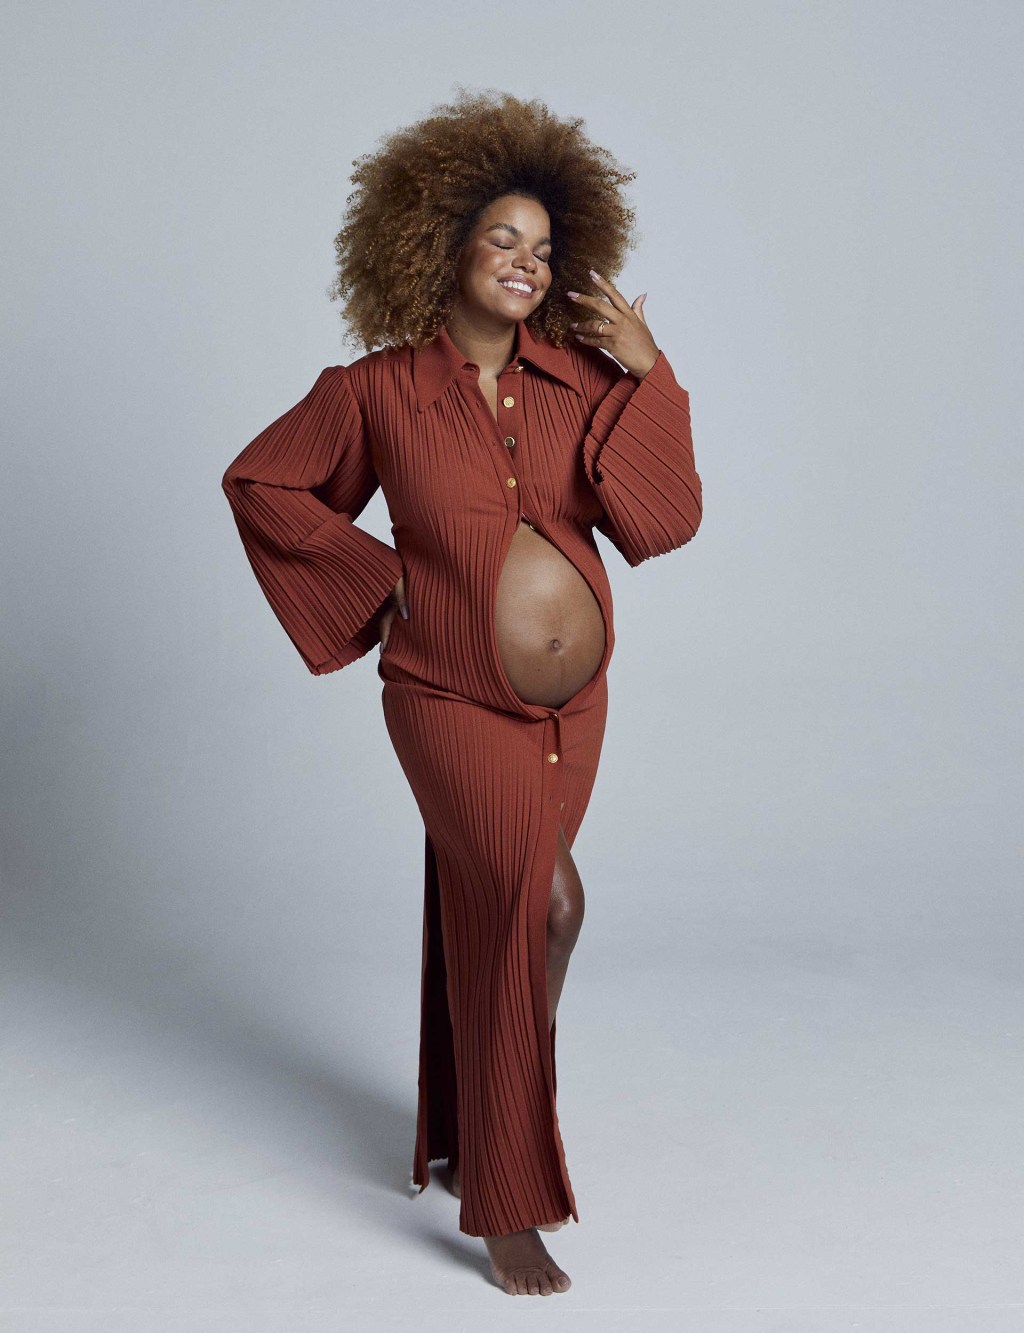 Mulher grávida usando um vestido que deixa a barriga à mostra. Ela sorri, olhando levemente para o lado